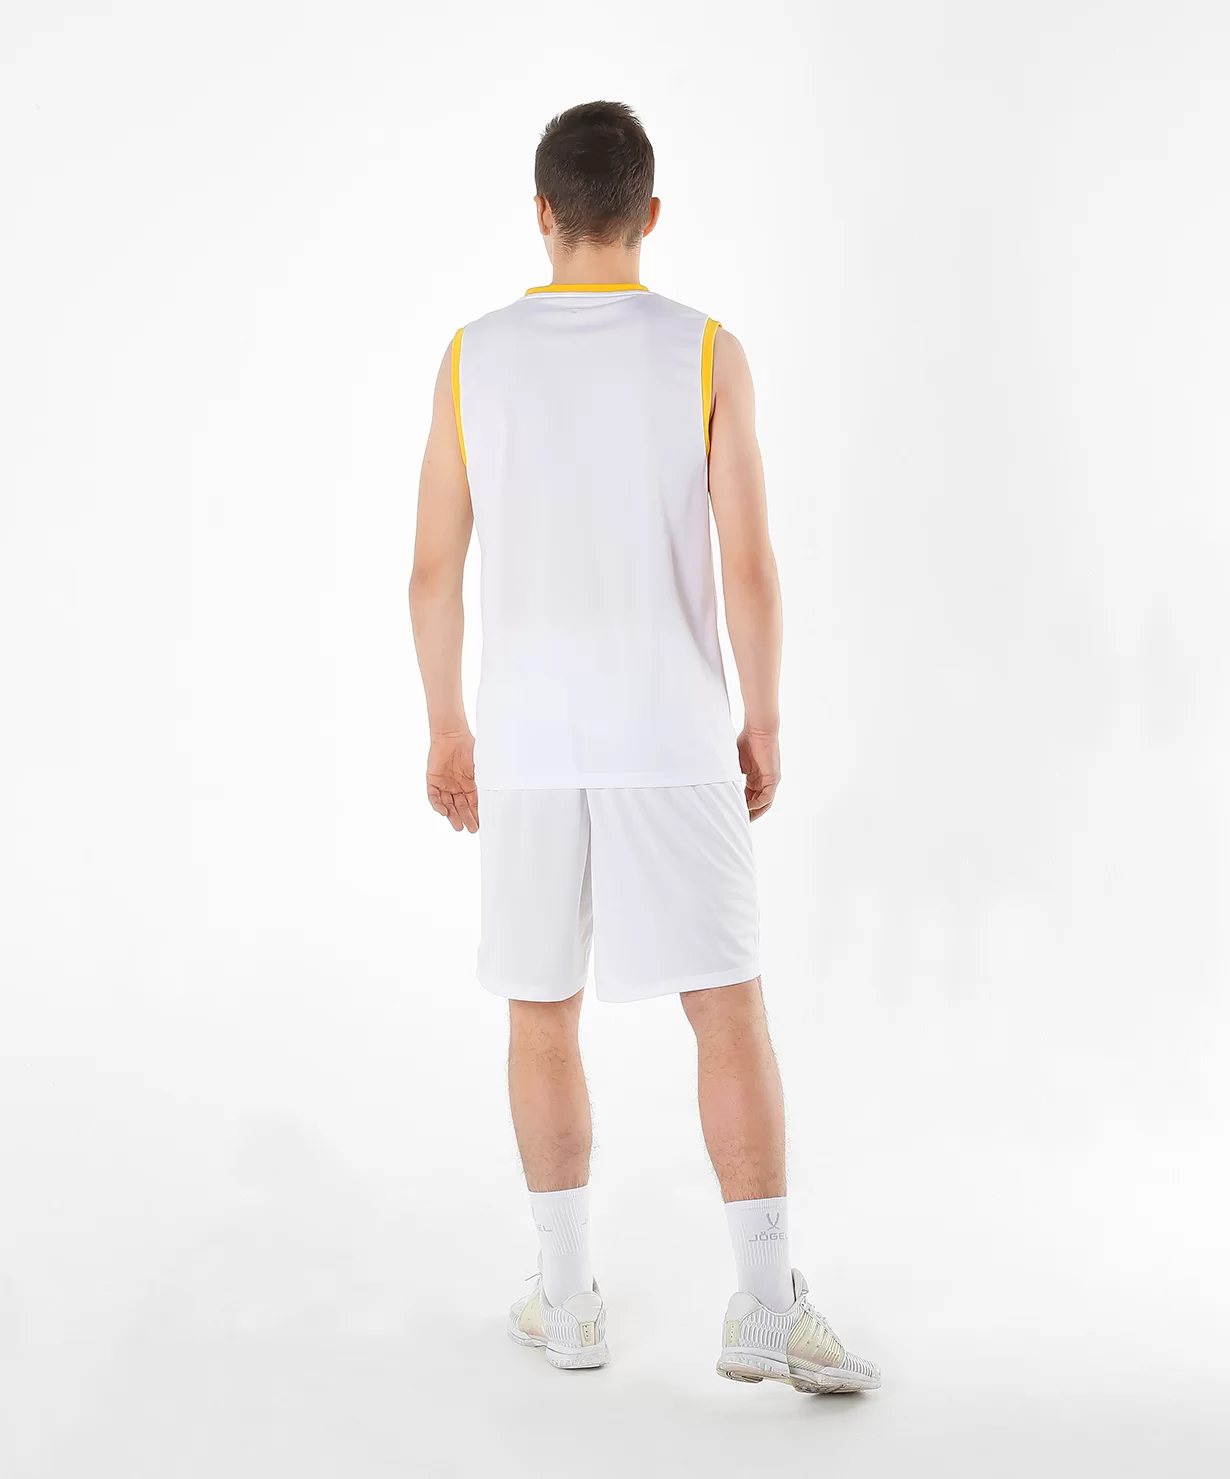 Реальное фото Майка баскетбольная JBT-1020-014, белый/желтый от магазина СпортСЕ